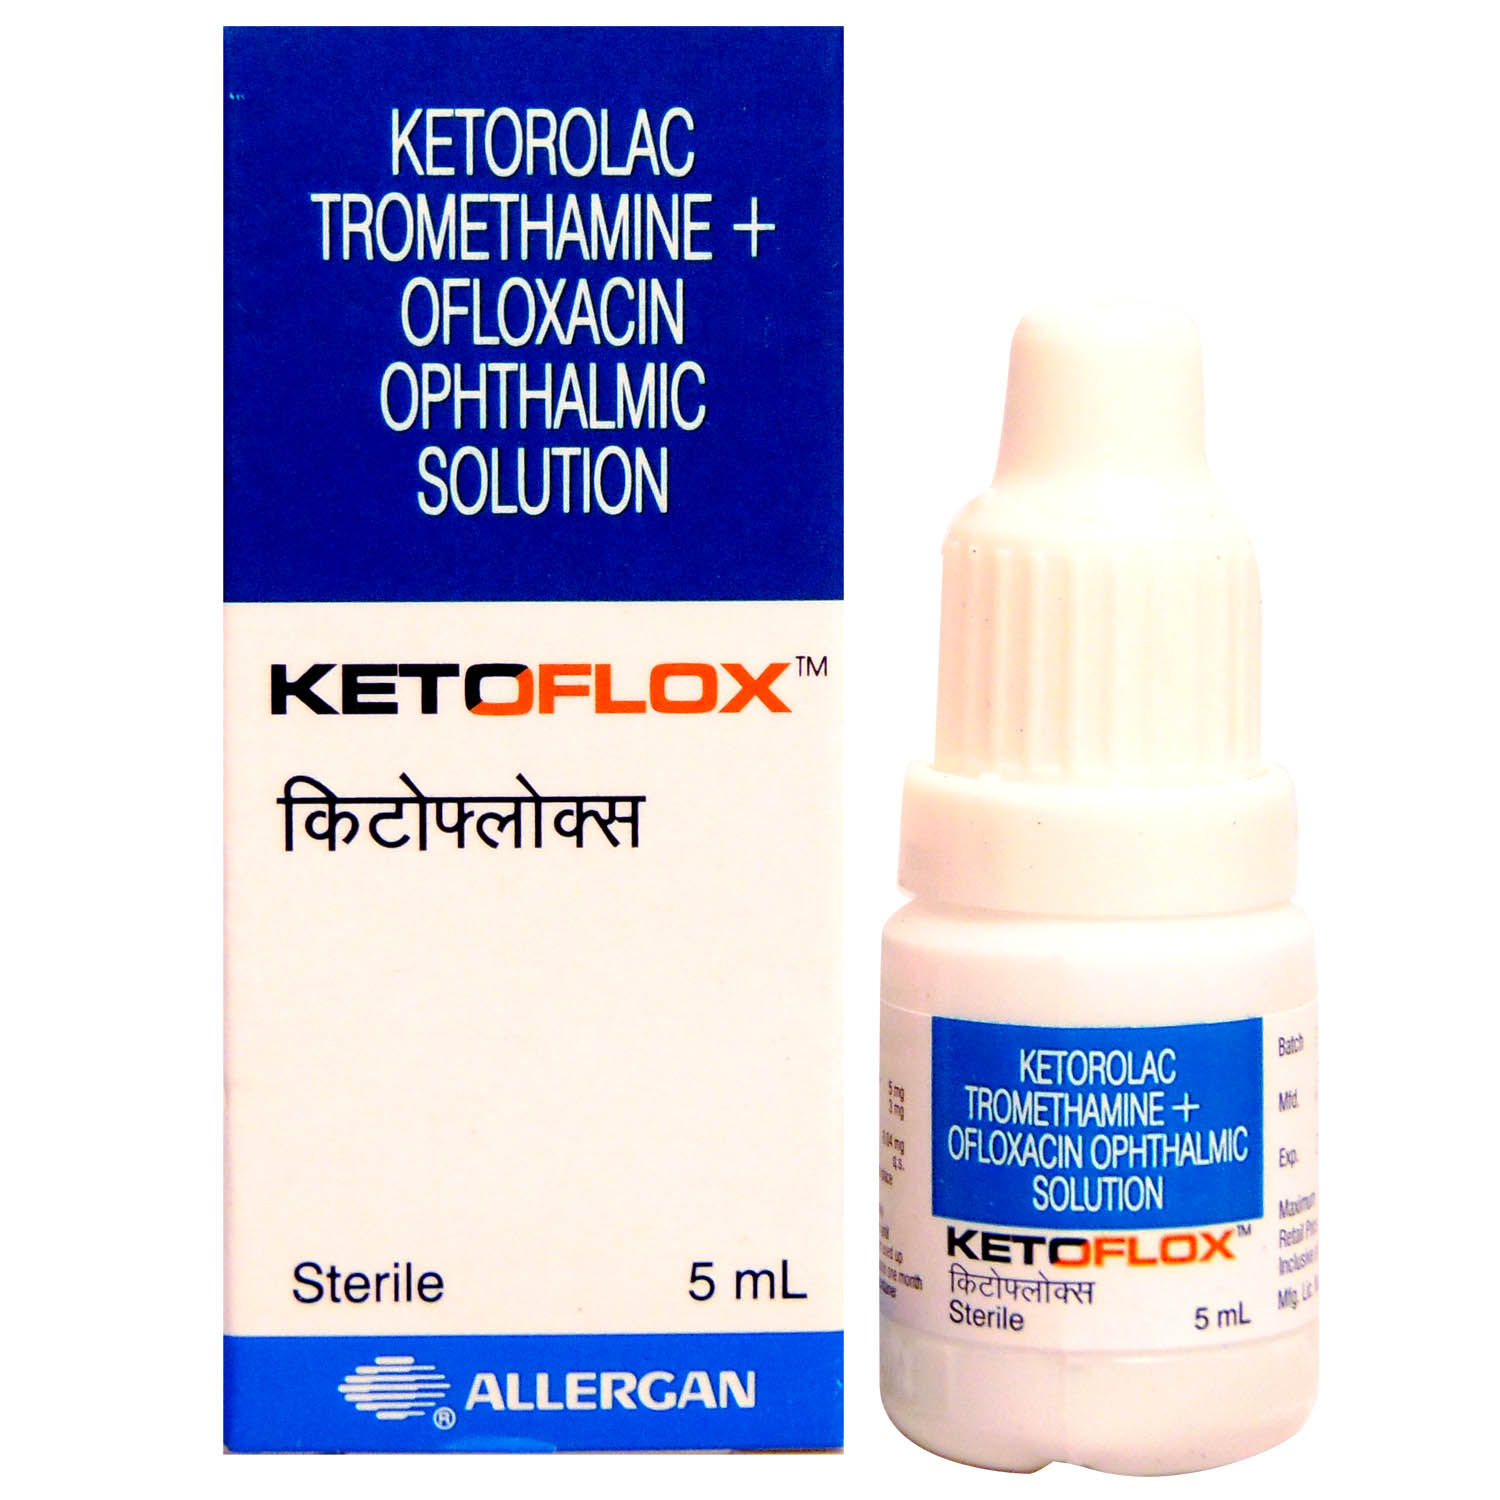 Buy Ketoflox Opthalmic Solution 5 ml Online